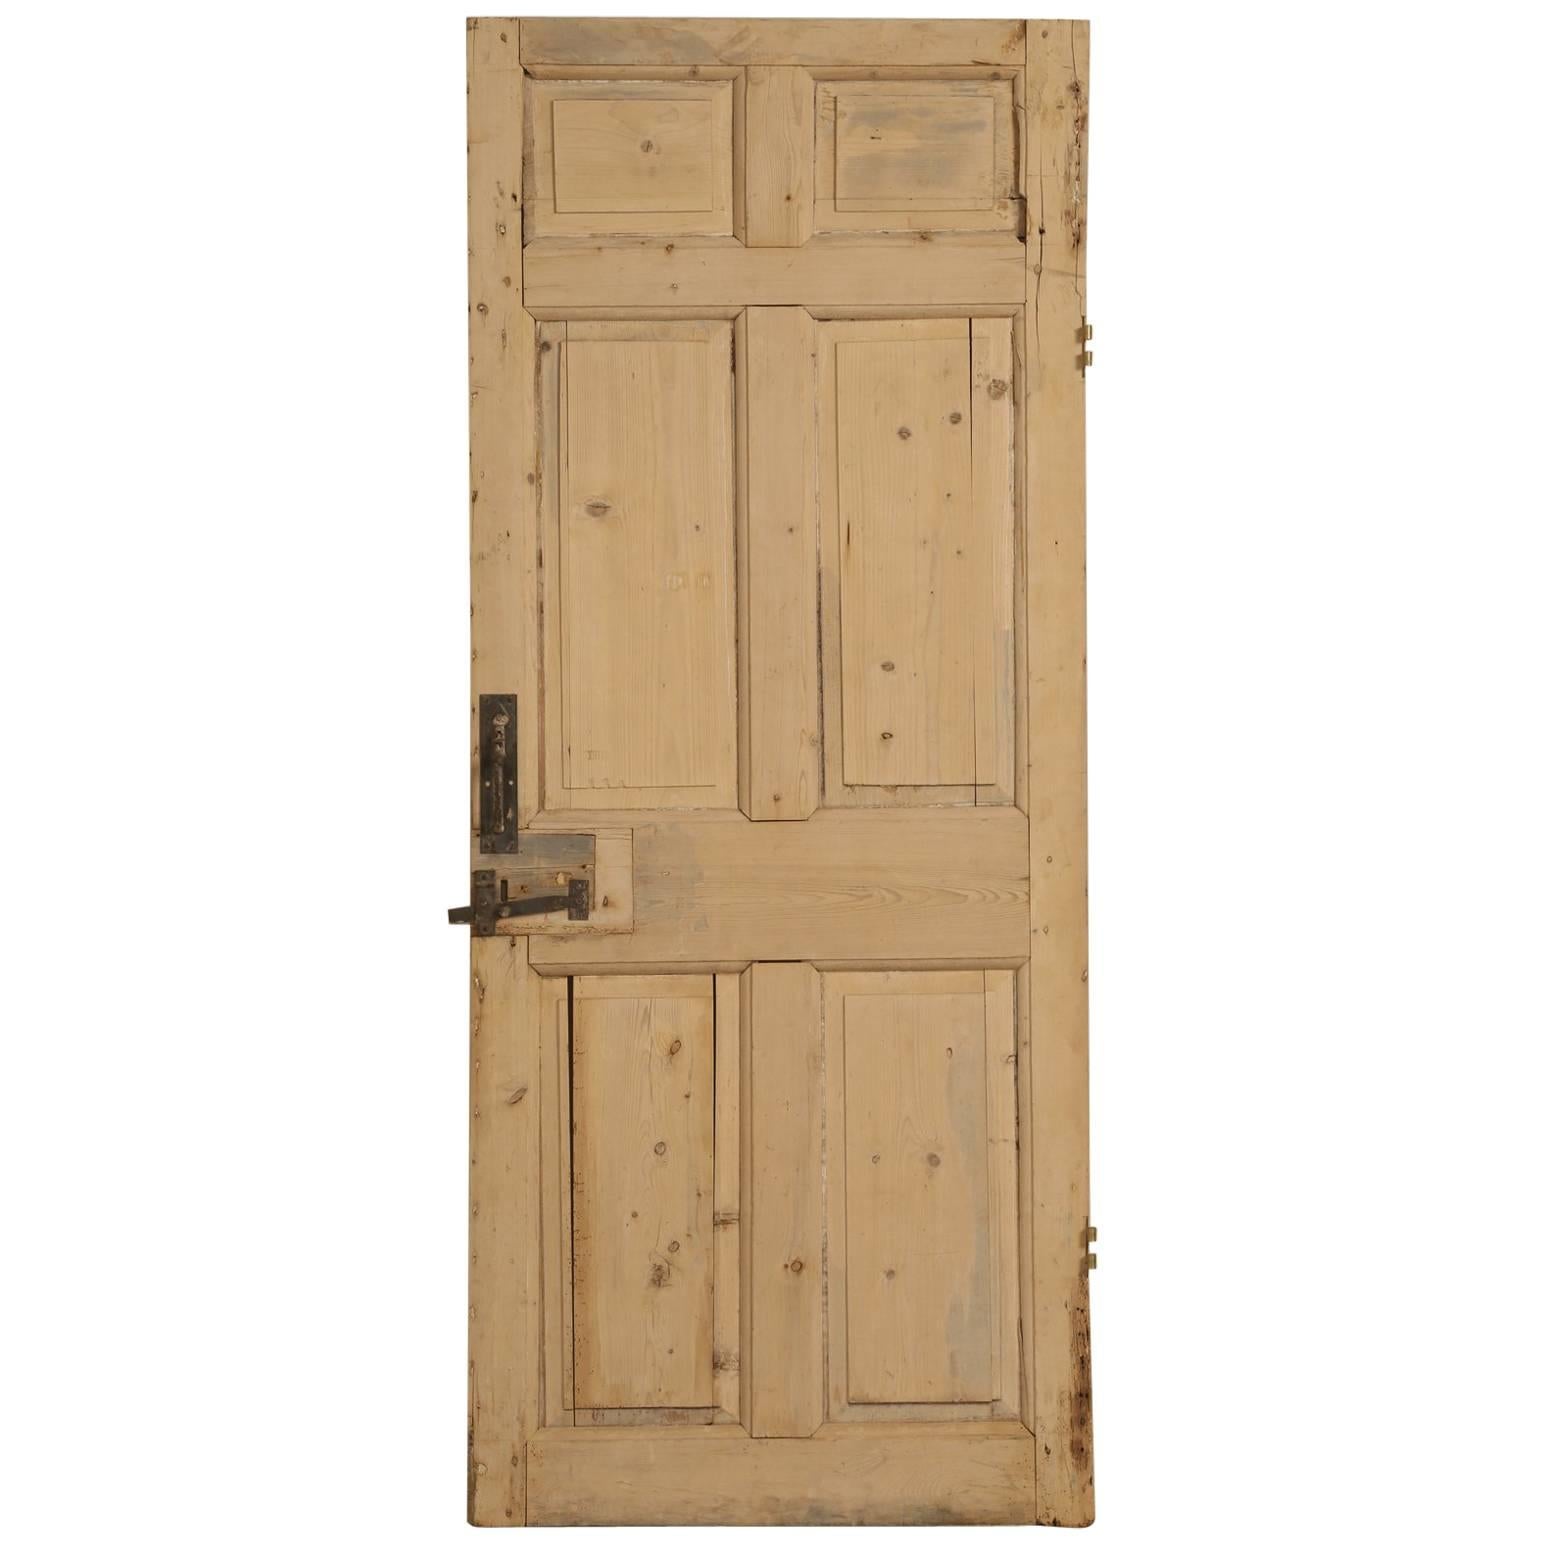 Antique Irish Scrubbed Pine Interior Door For Sale